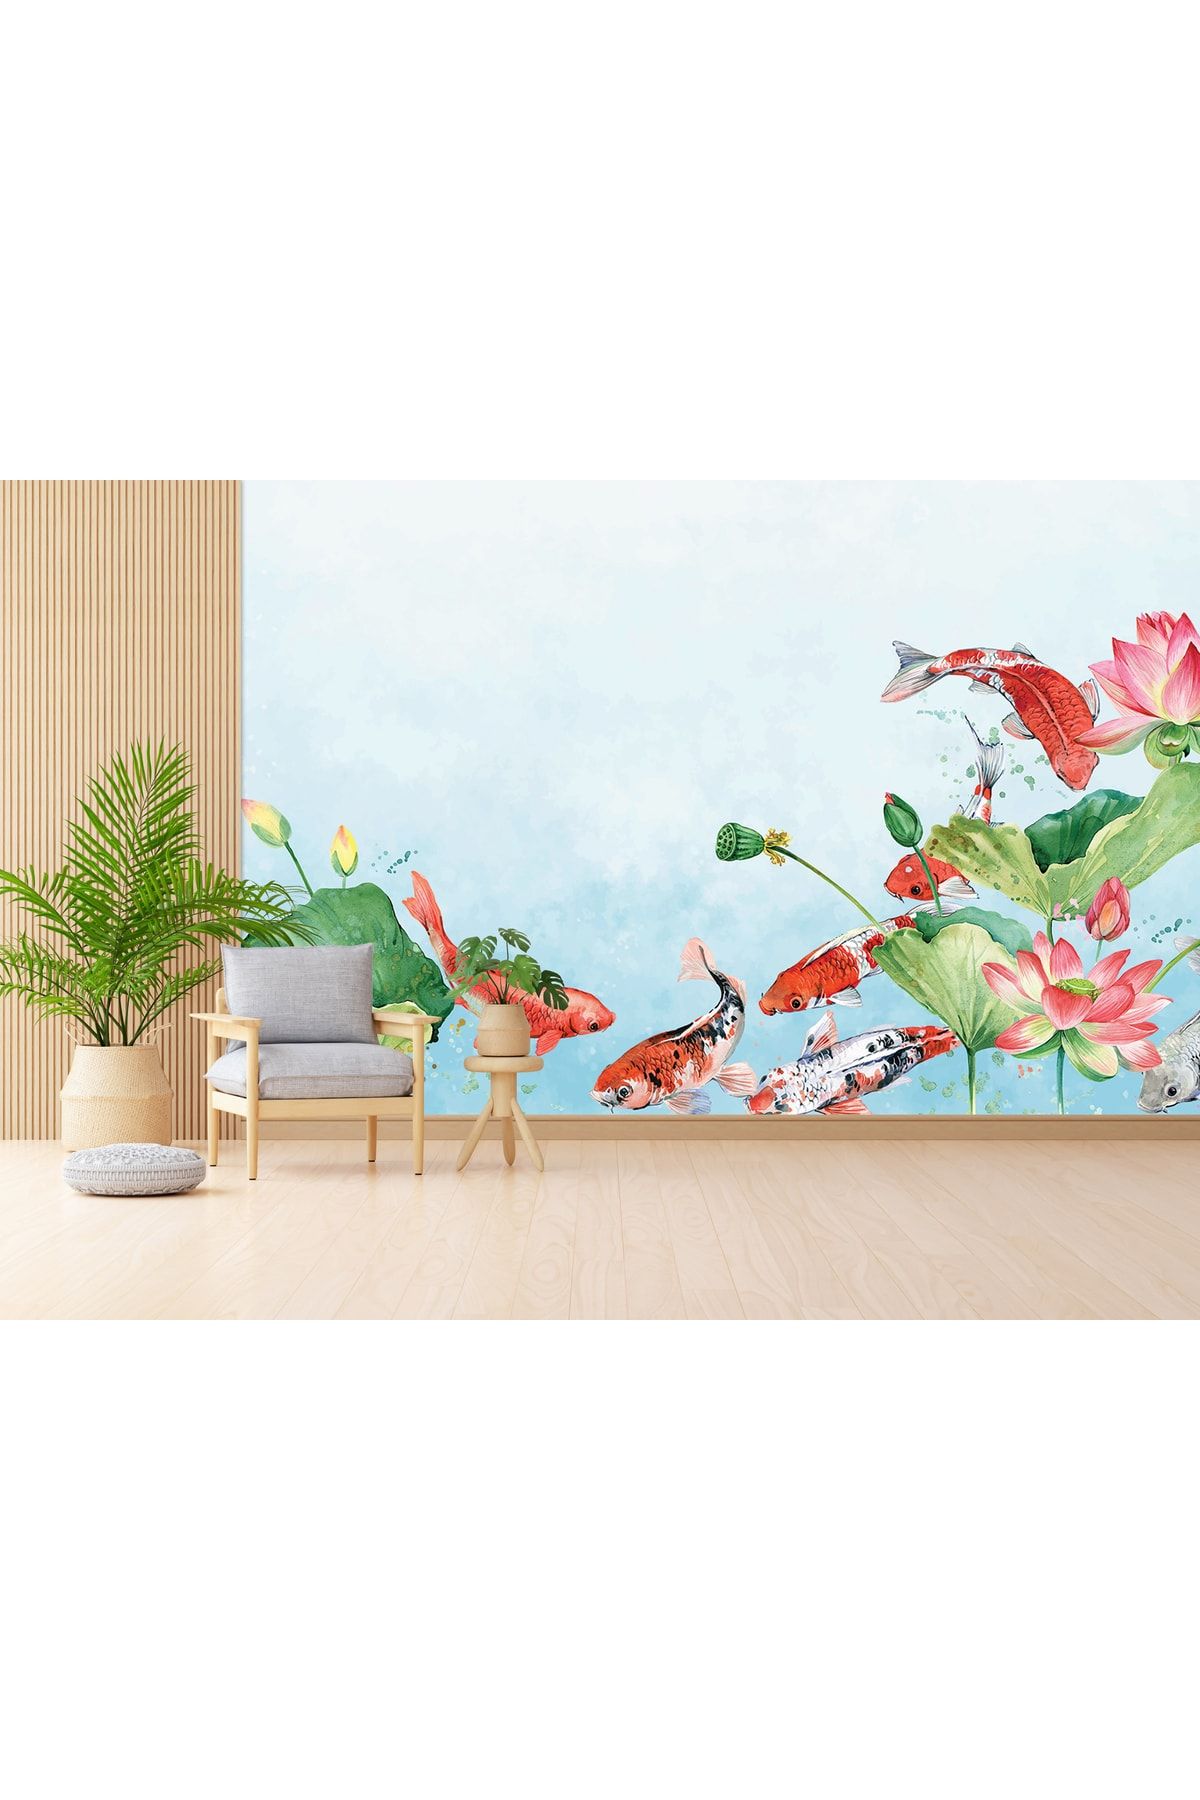 LOTUS AURA Renkli Balıklı Sulu Boya Salon Duvar Kağıdı, Balıklı Ve Çiçekli Çocuk Odası Duvar Resmi